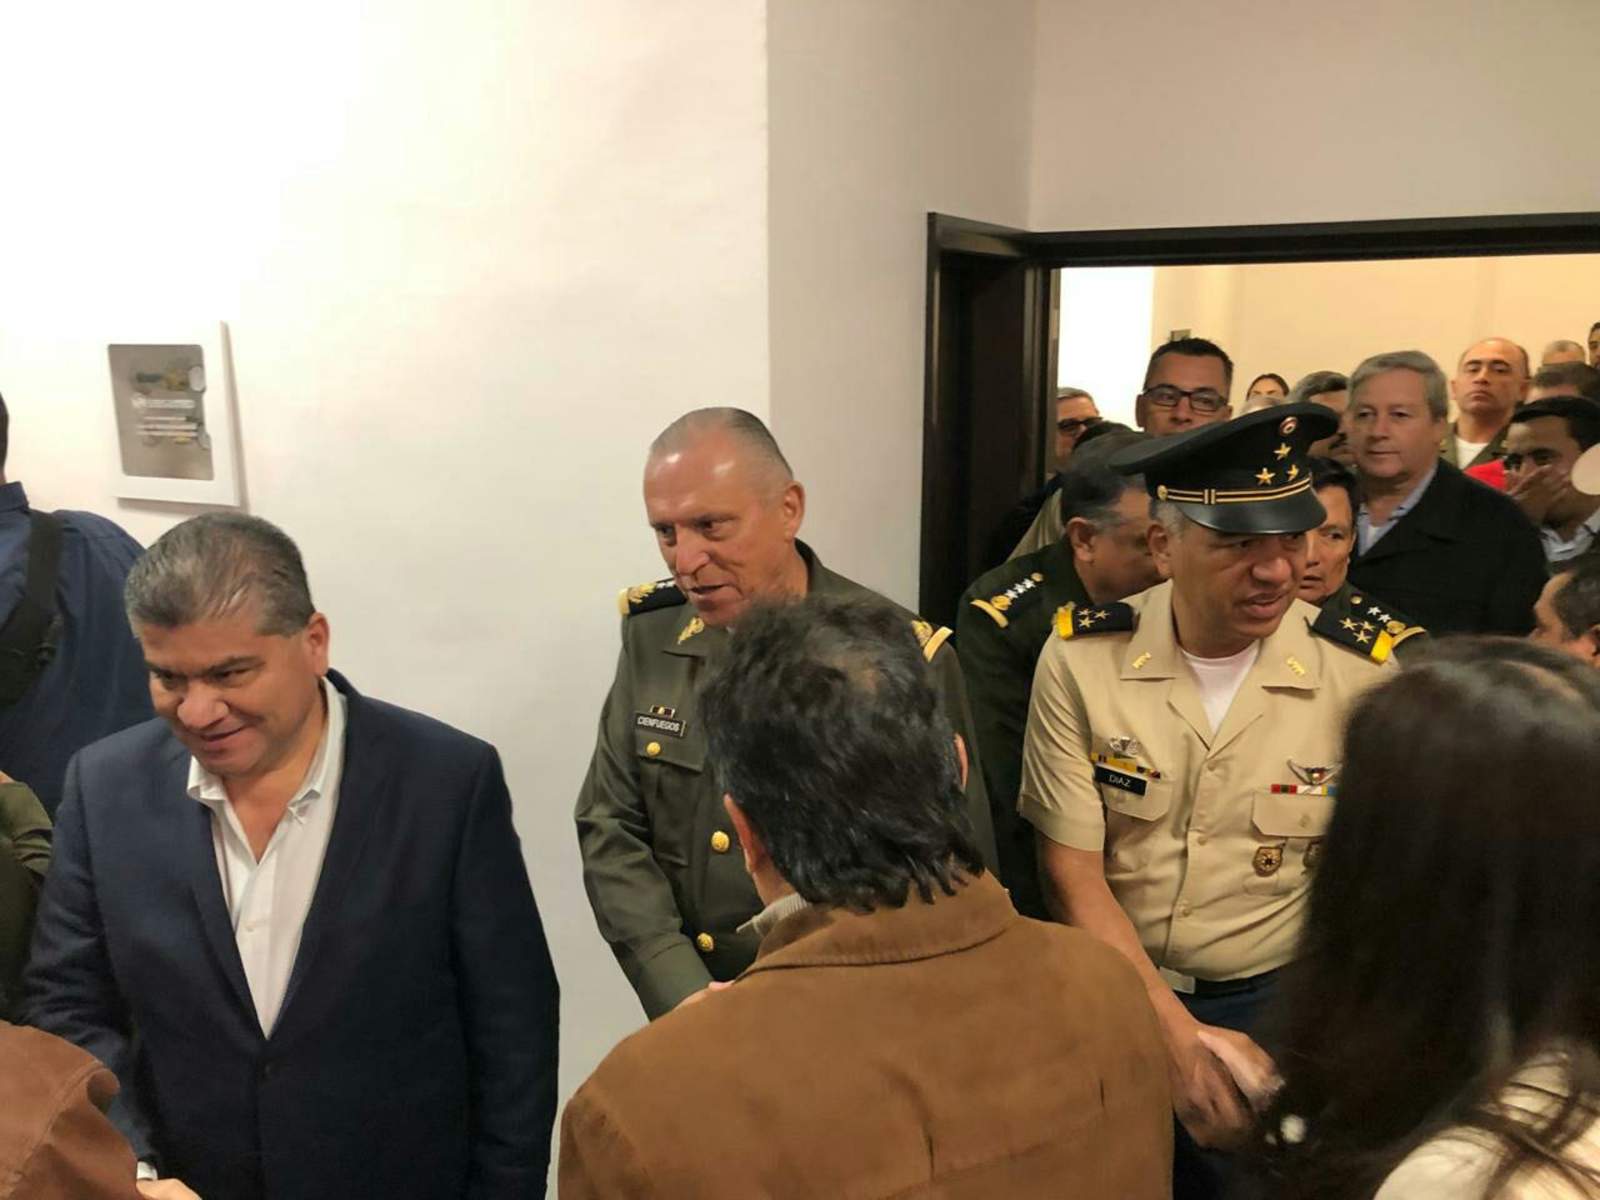 Estado entrega el nuevo Hospital Militar de Torreón